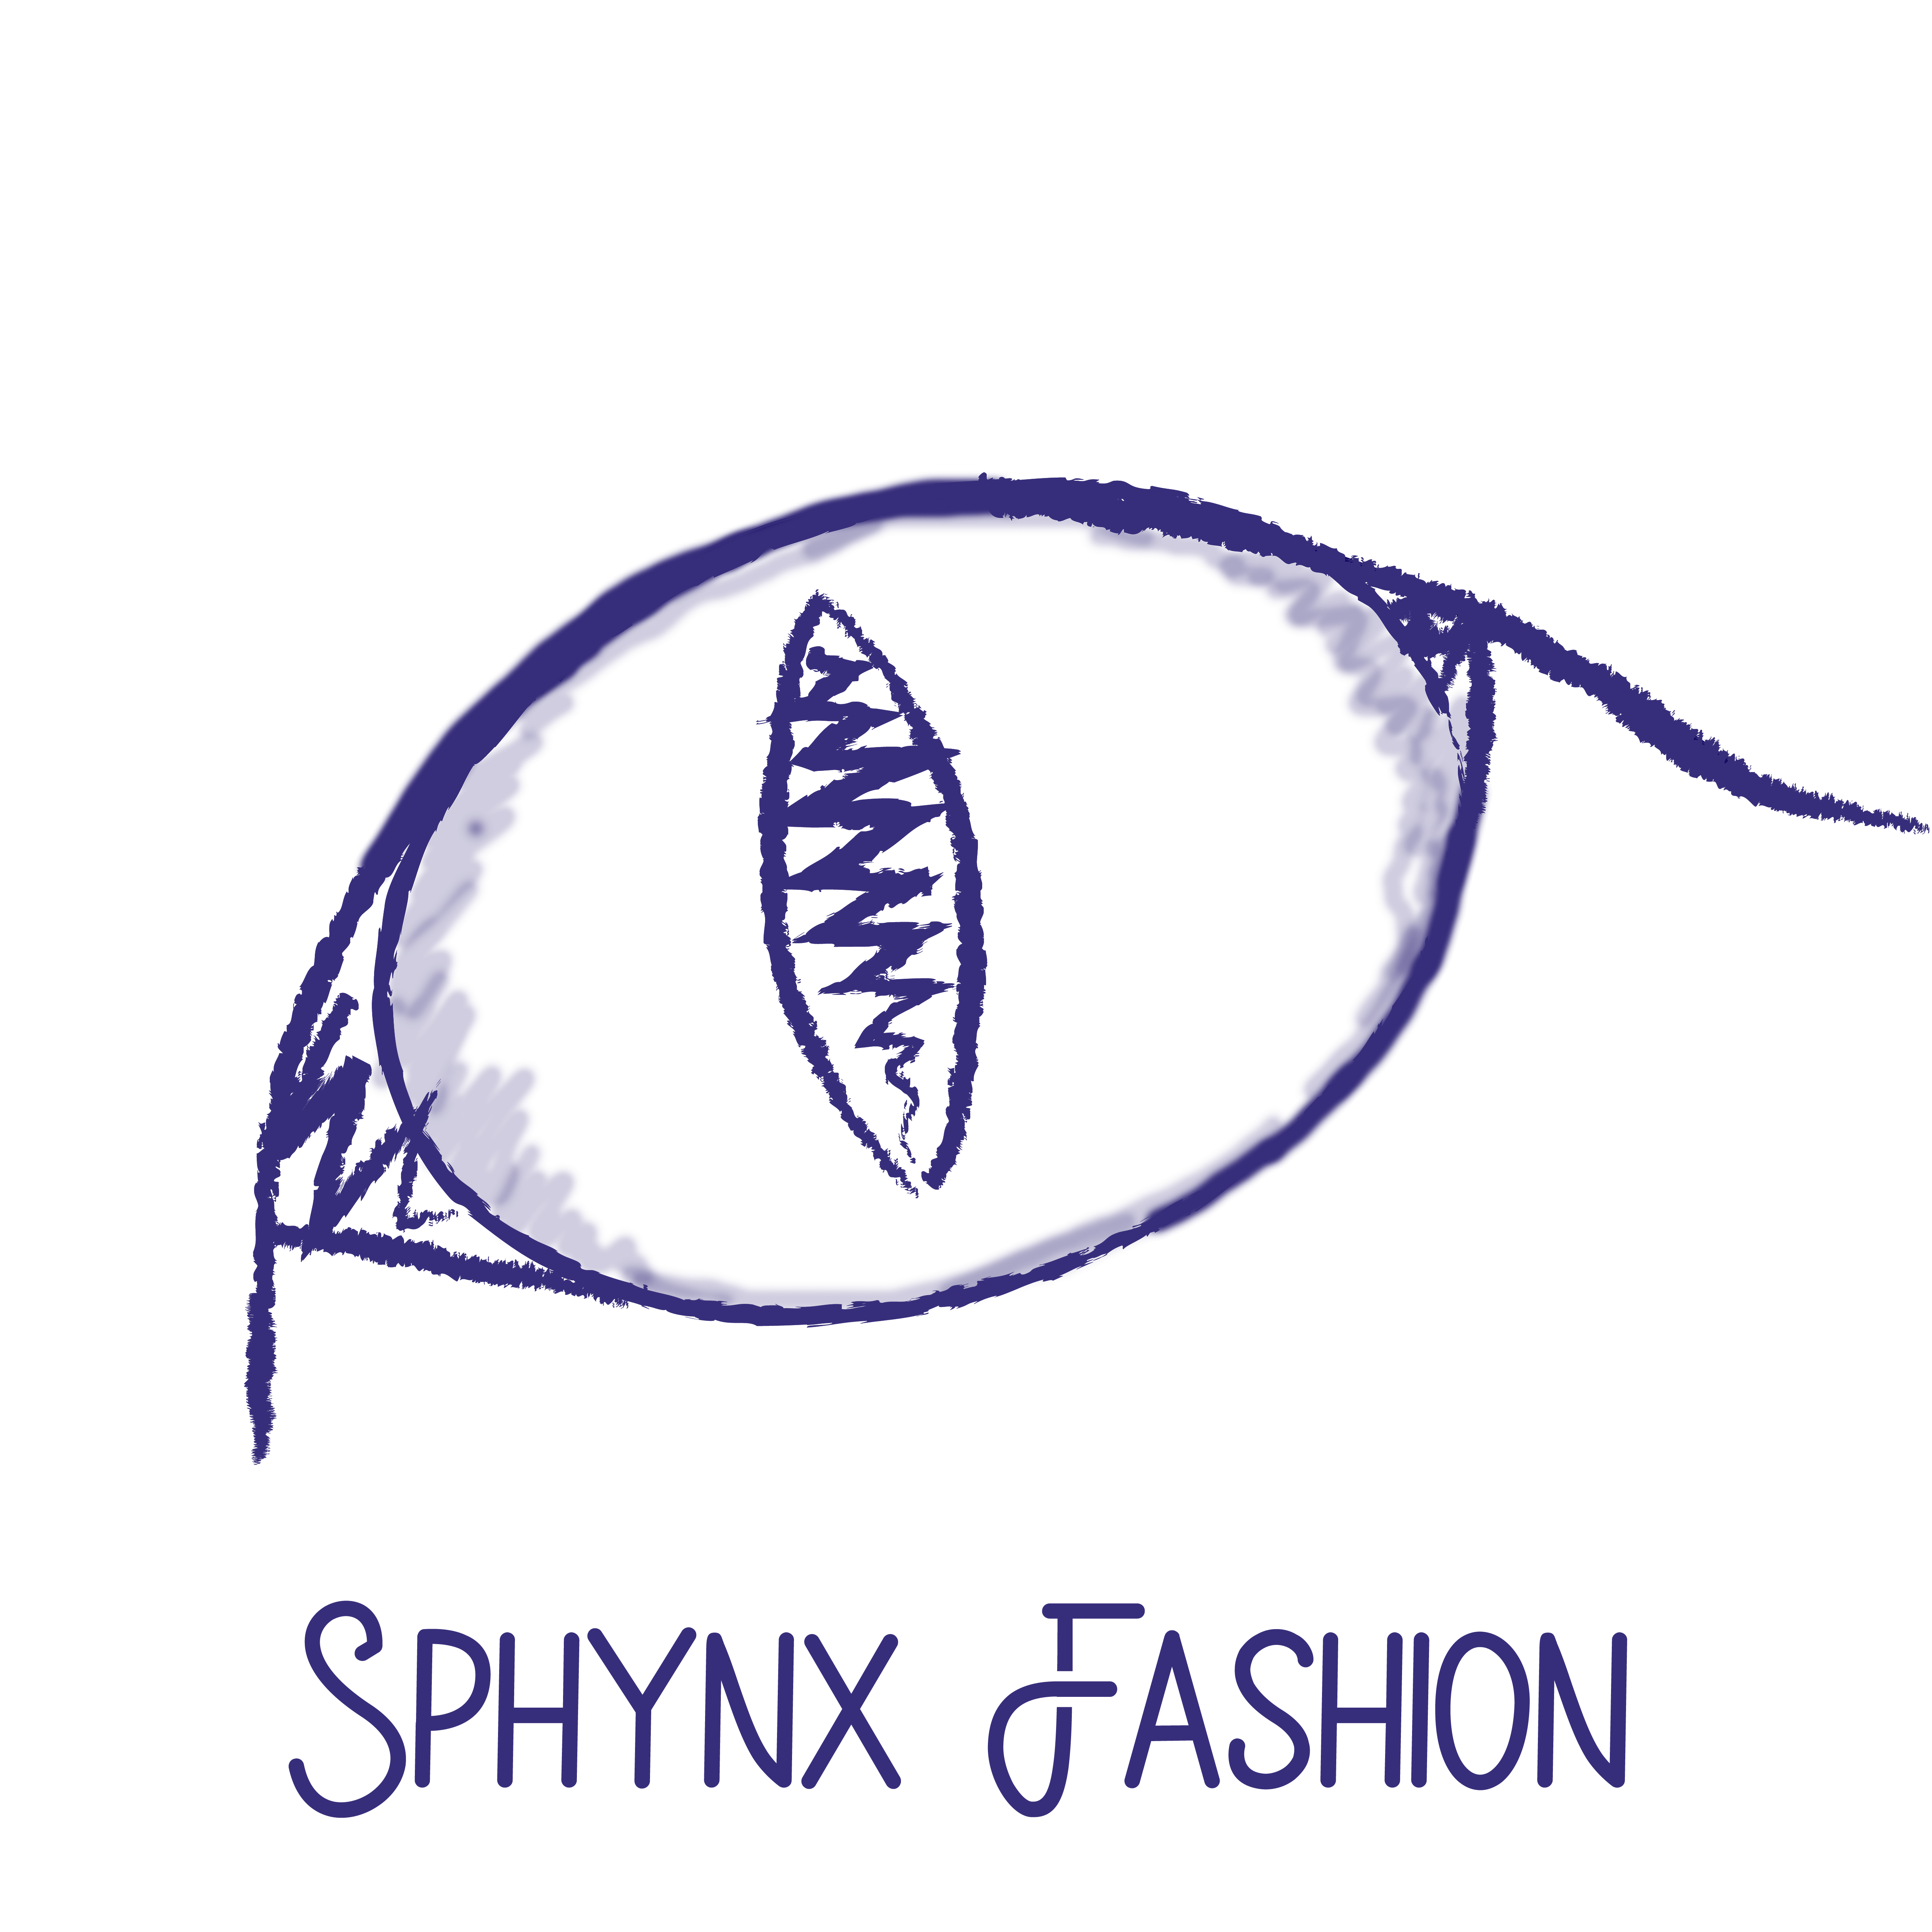 SphynxFashion